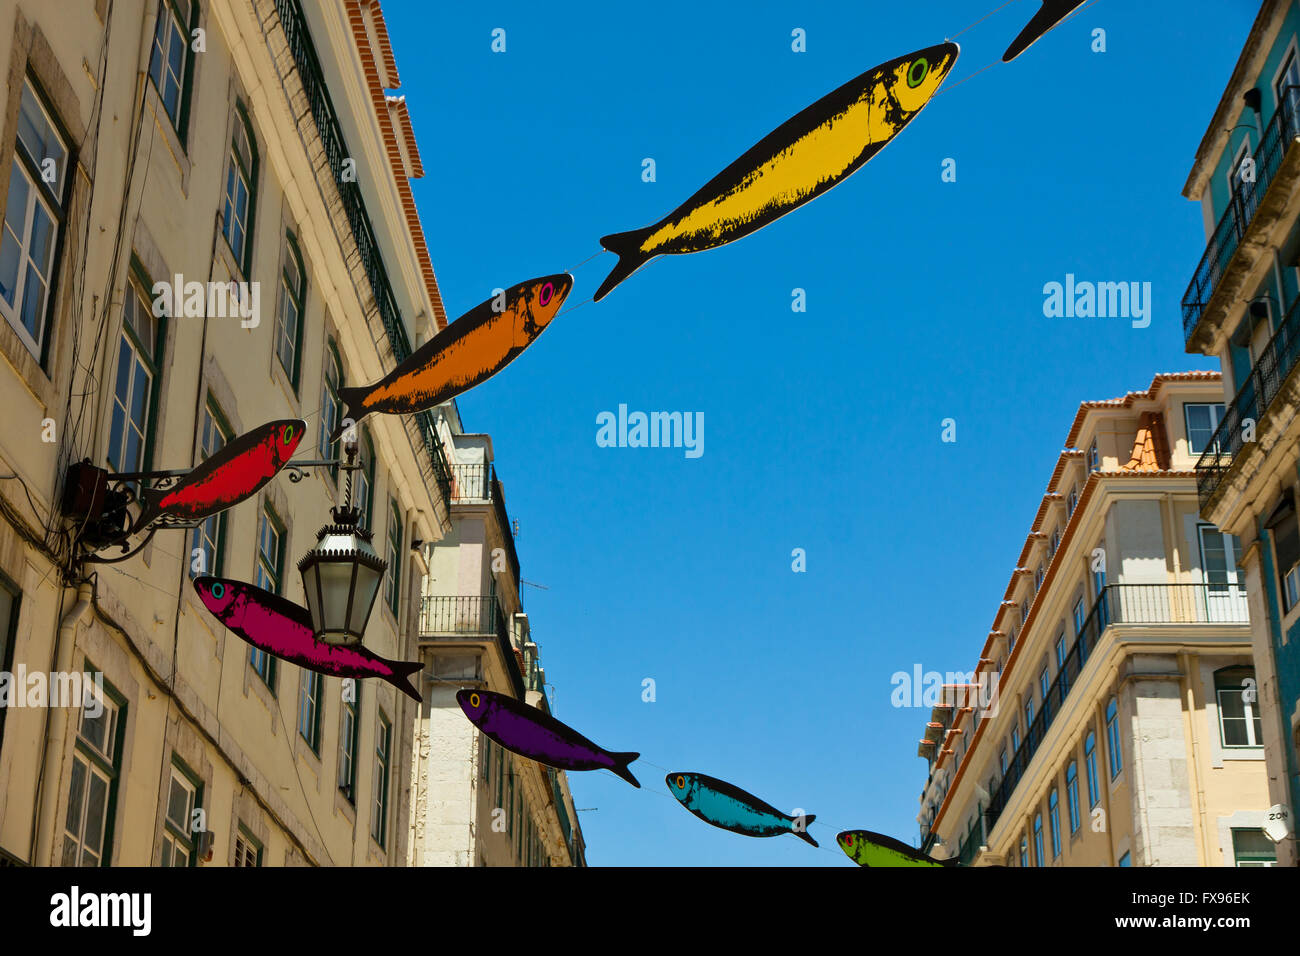 Rues décorées avec des sardines au cours du Festival de Lisbonne (Festas de Lisboa) Banque D'Images